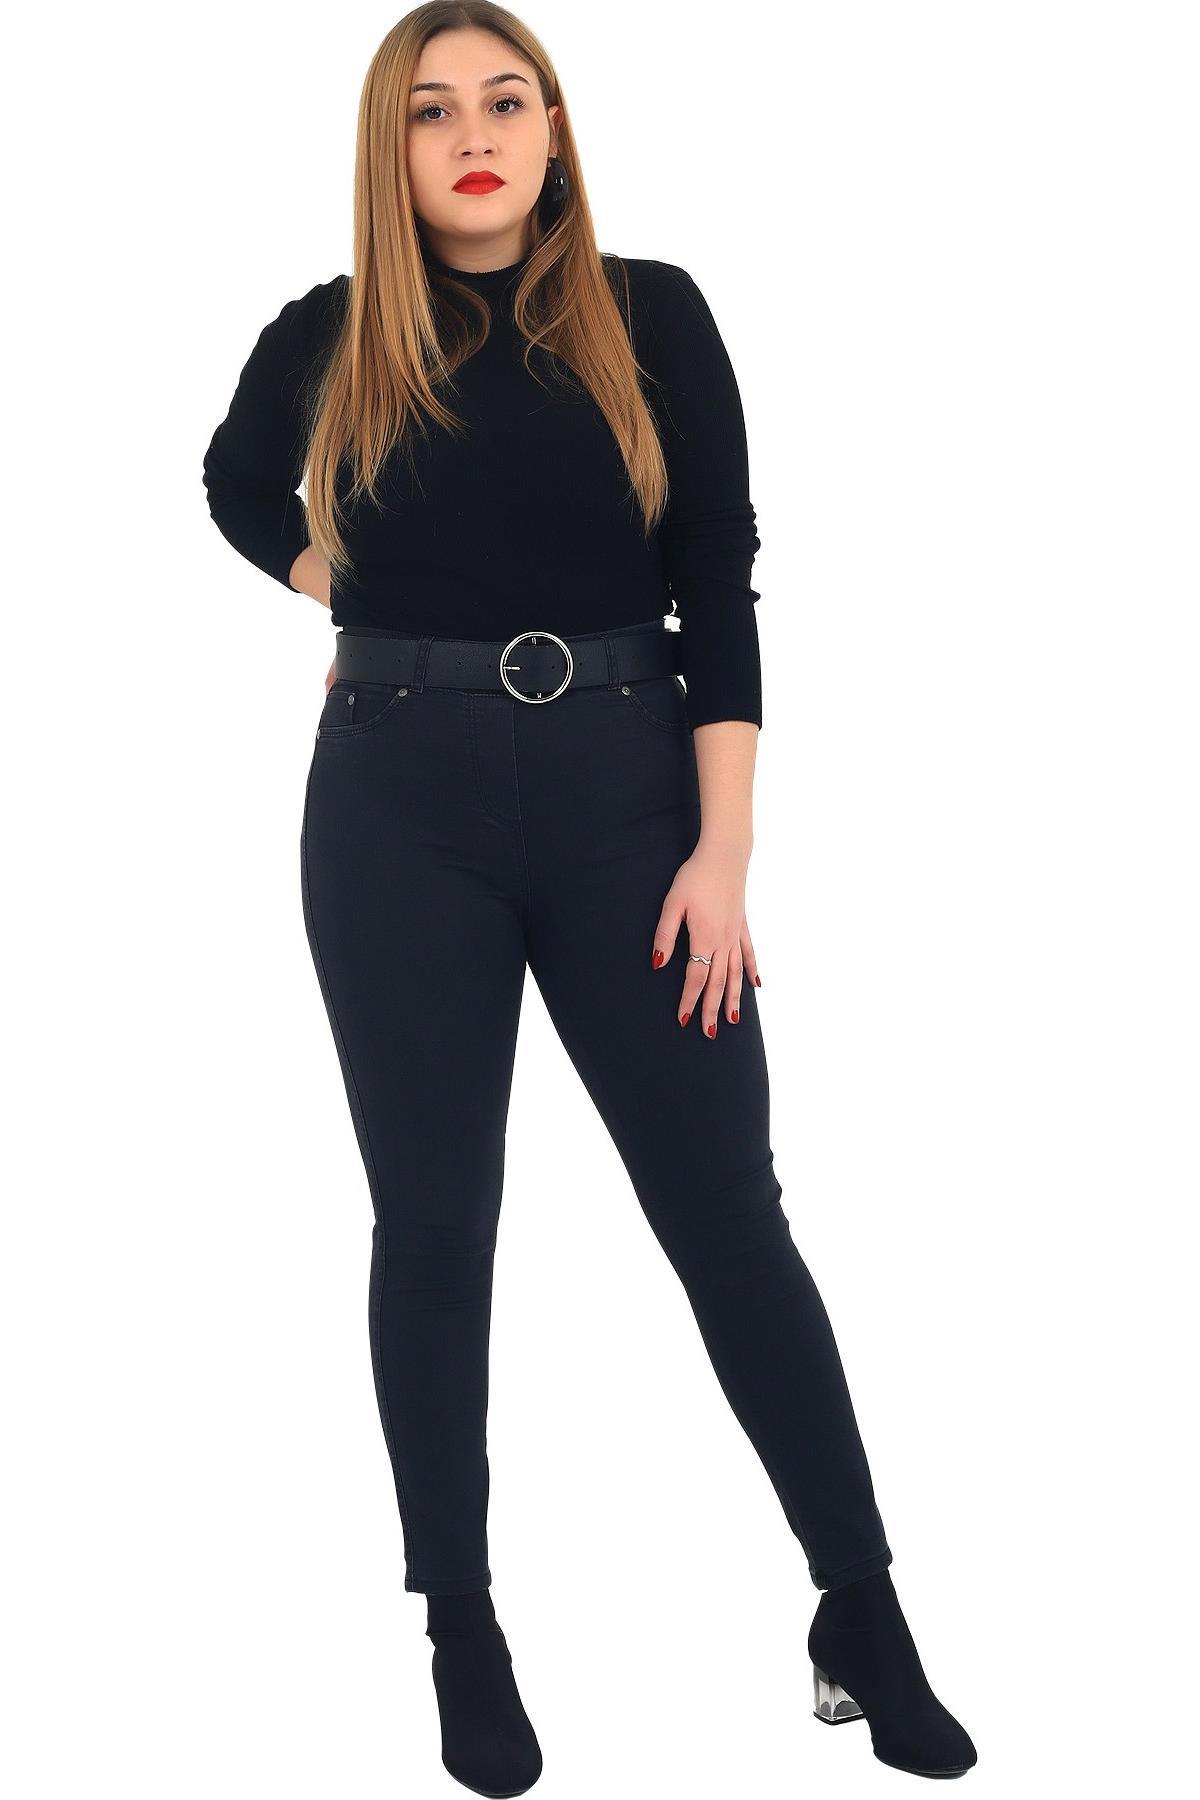 Fierte Kadın Büyük Beden Pantolon Rg1029Pb Kanvas Haki Siyah Büyük Beden Alt Giyim